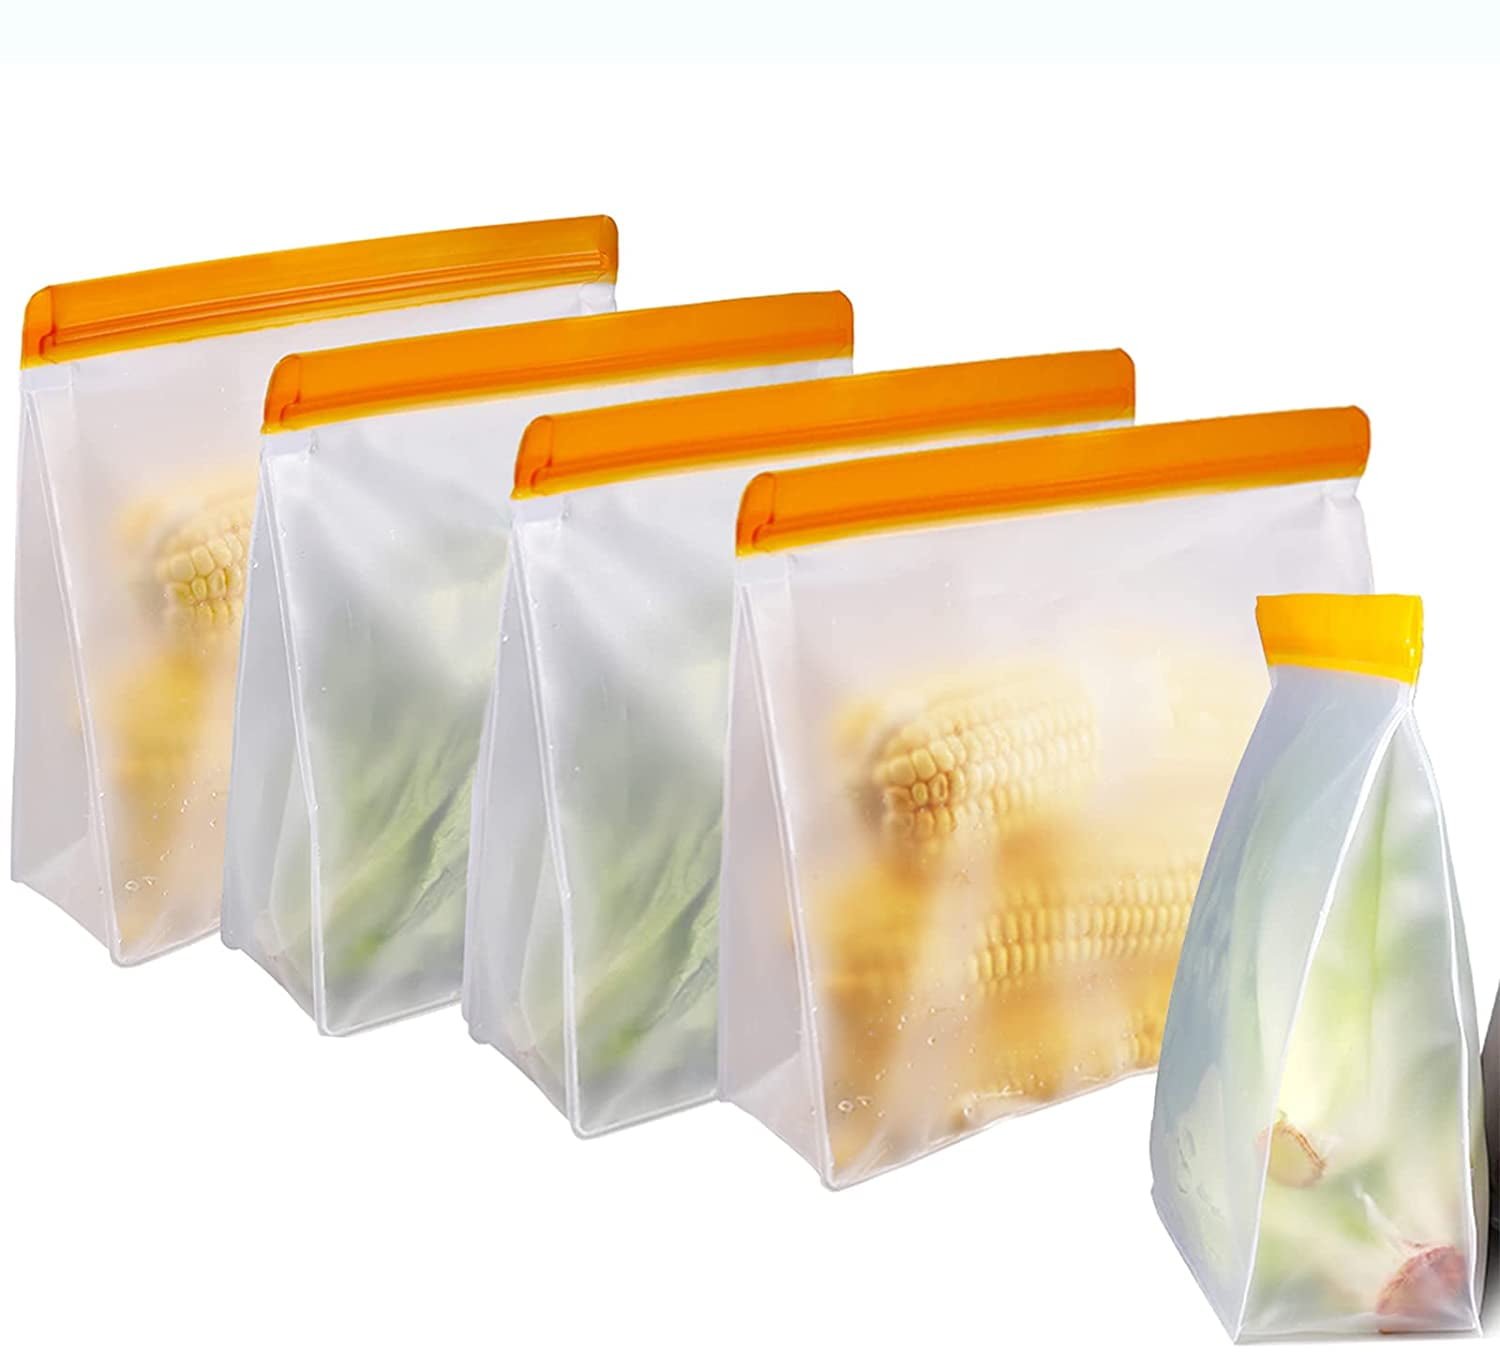 Gallon Size Reusable Freezer Bags, Set of 8